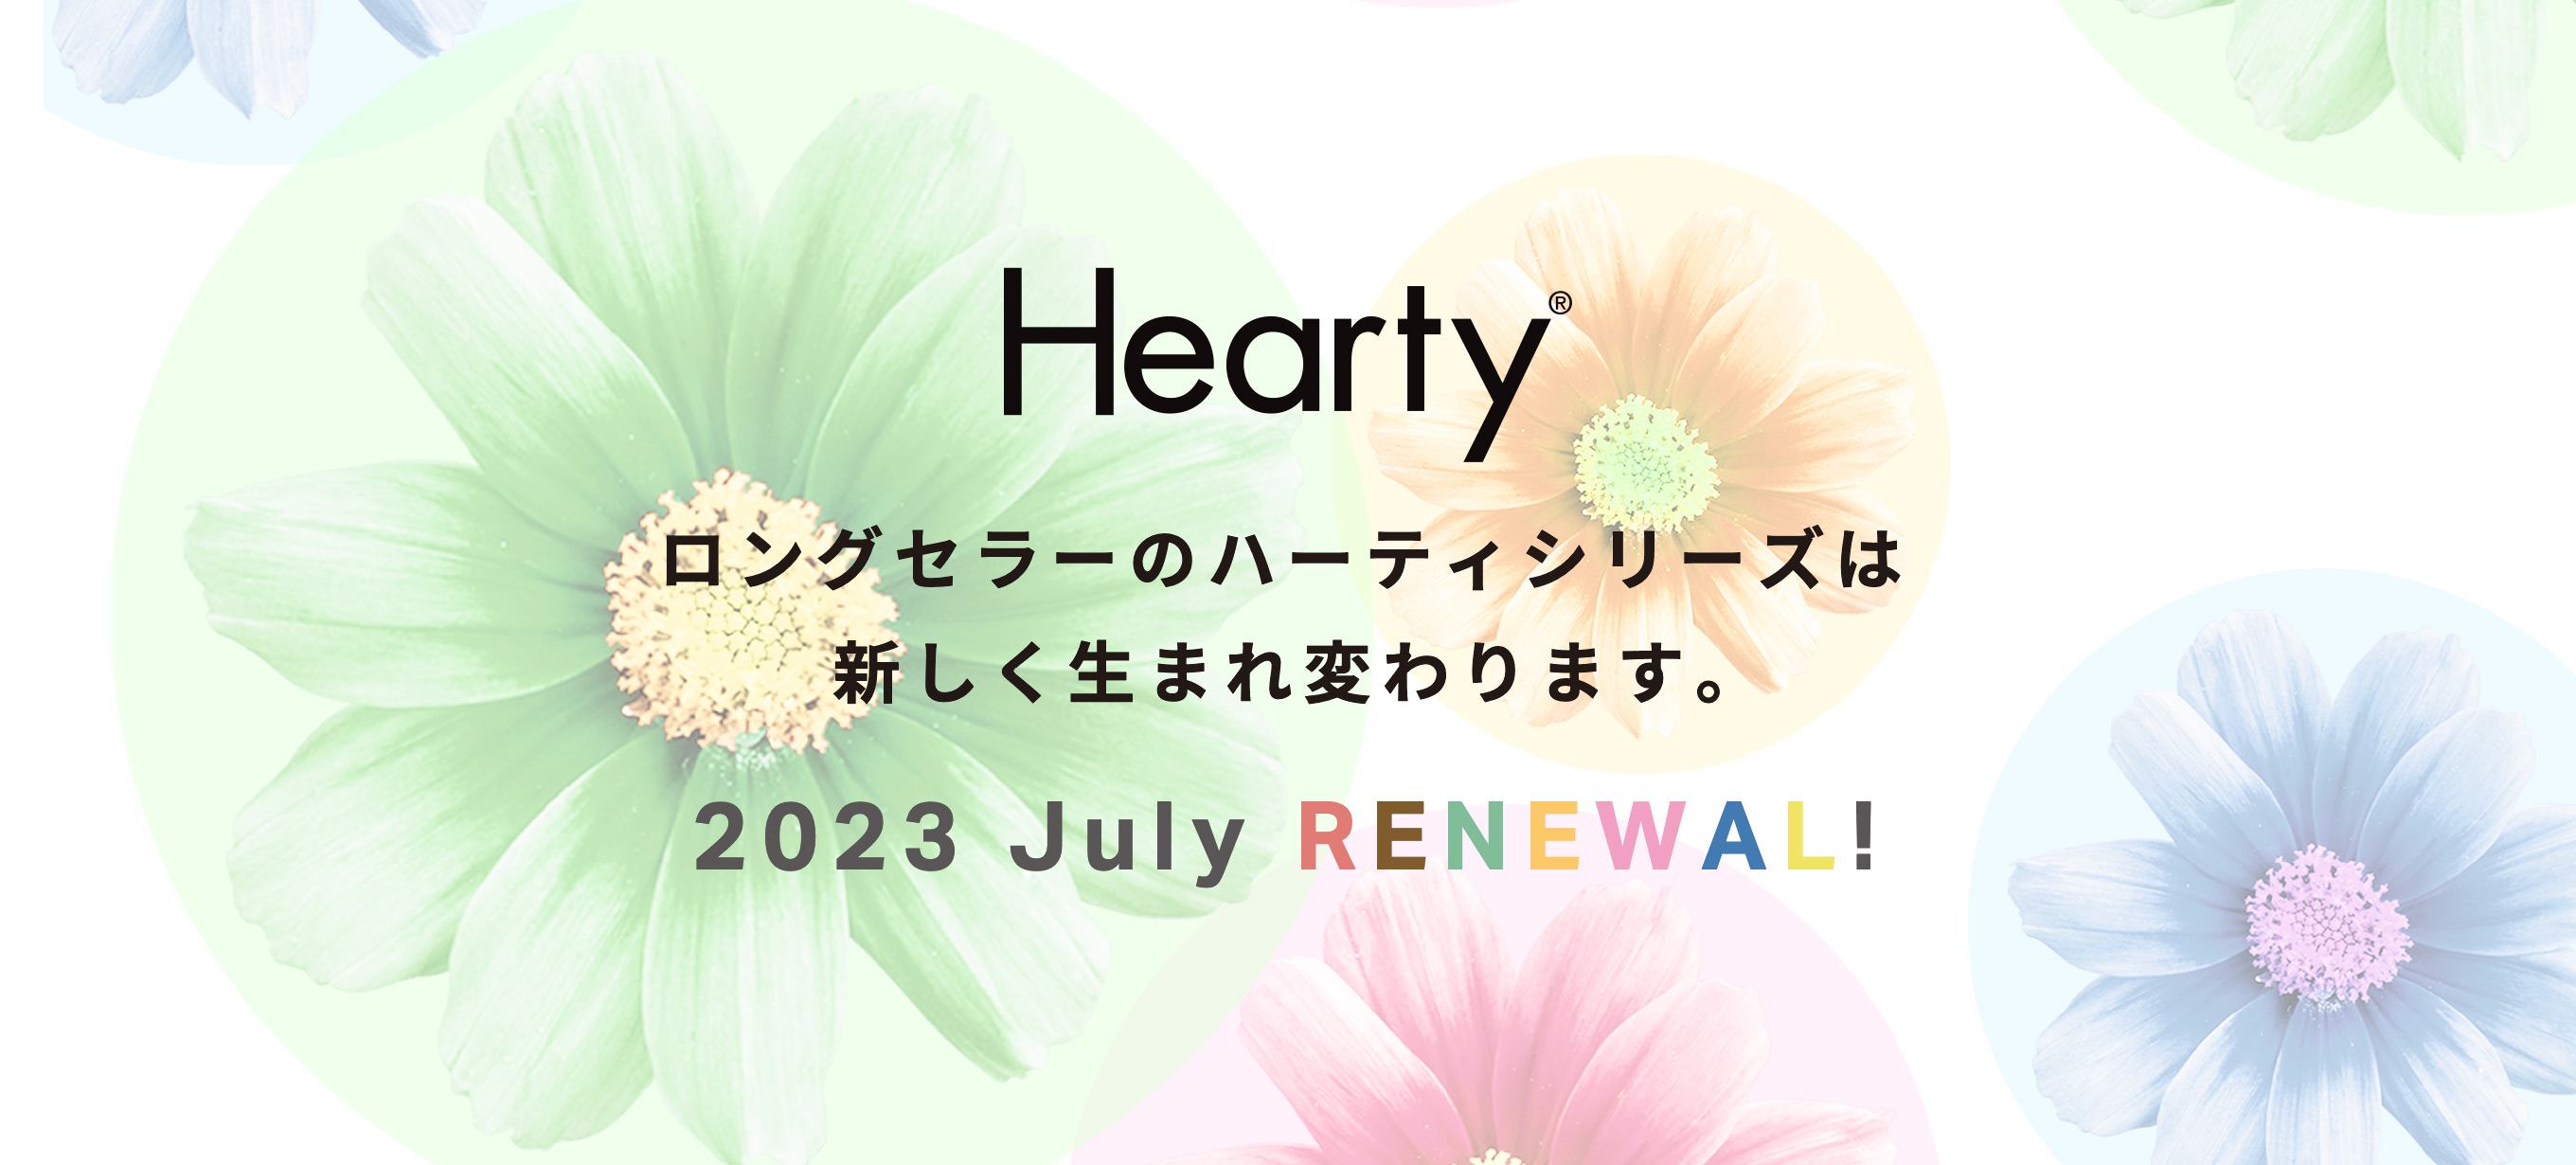 ロングセラーのハーティシリーズは新しく生まれ変わります。2023 July RENEWAL!